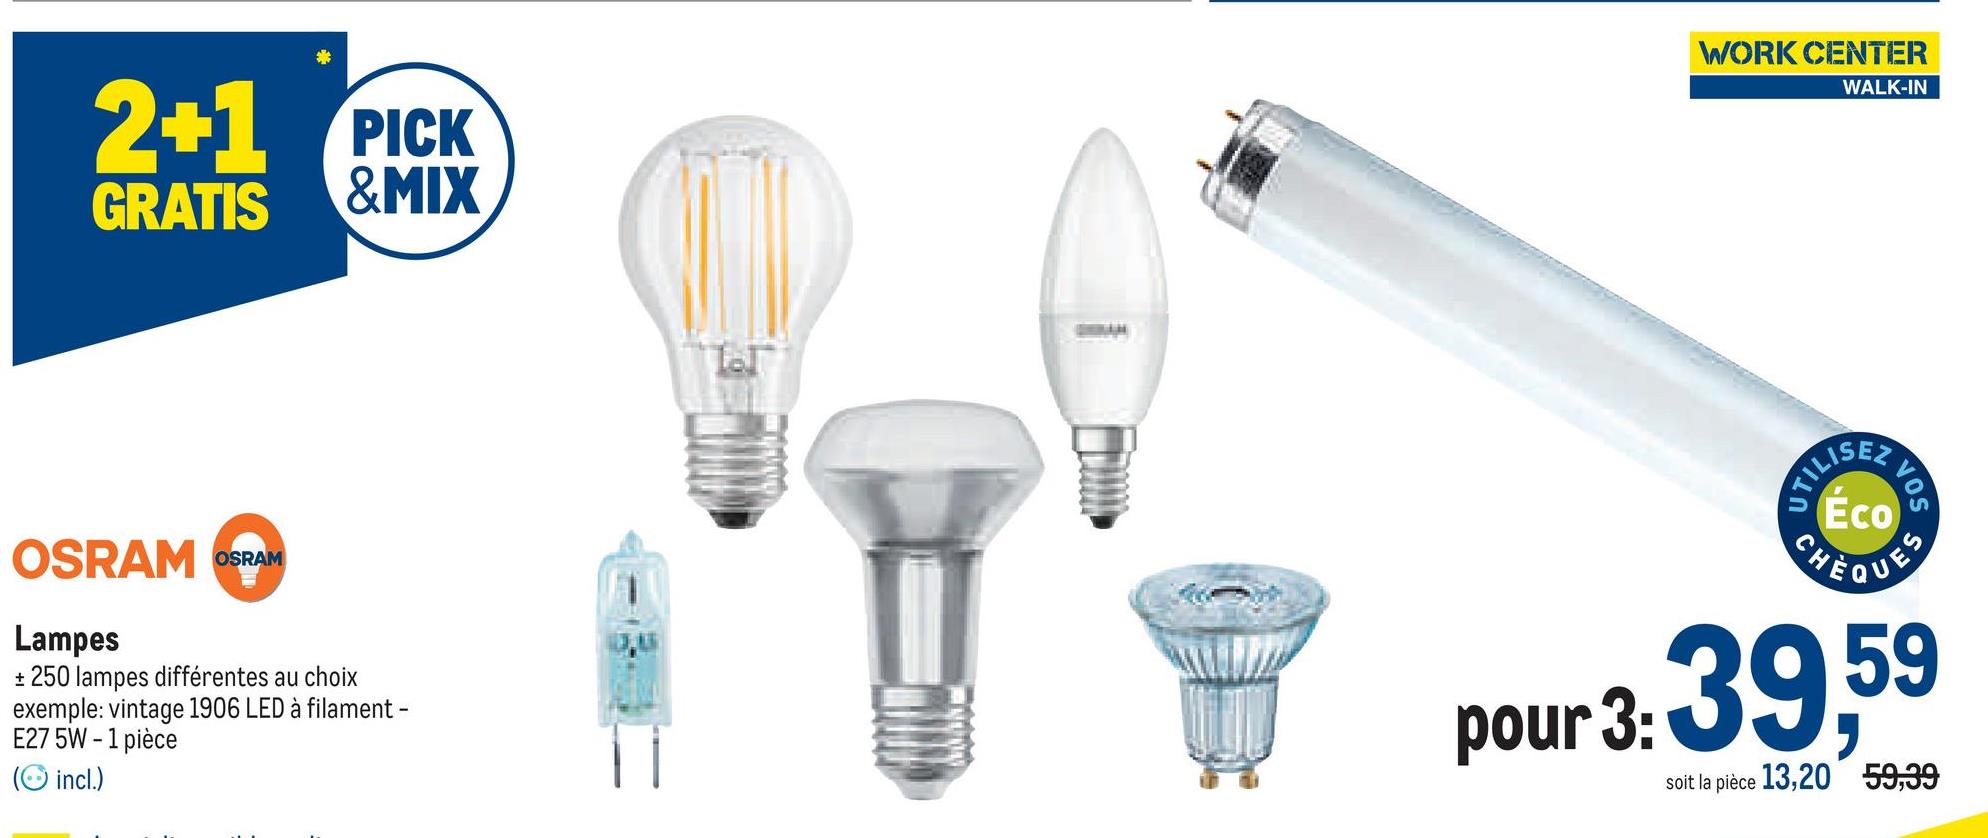 2+1 PICK
GRATIS &MIX
OSRAM OSRAM
Lampes
+ 250 lampes différentes au choix
exemple: vintage 1906 LED à filament -
E27 5W-1 pièce
(incl.)
WORK CENTER
WALK-IN
UTILIS
23
VOS
Éco
CHÈQUES
pour 3: 39,59
soit la pièce 13,20 59,39